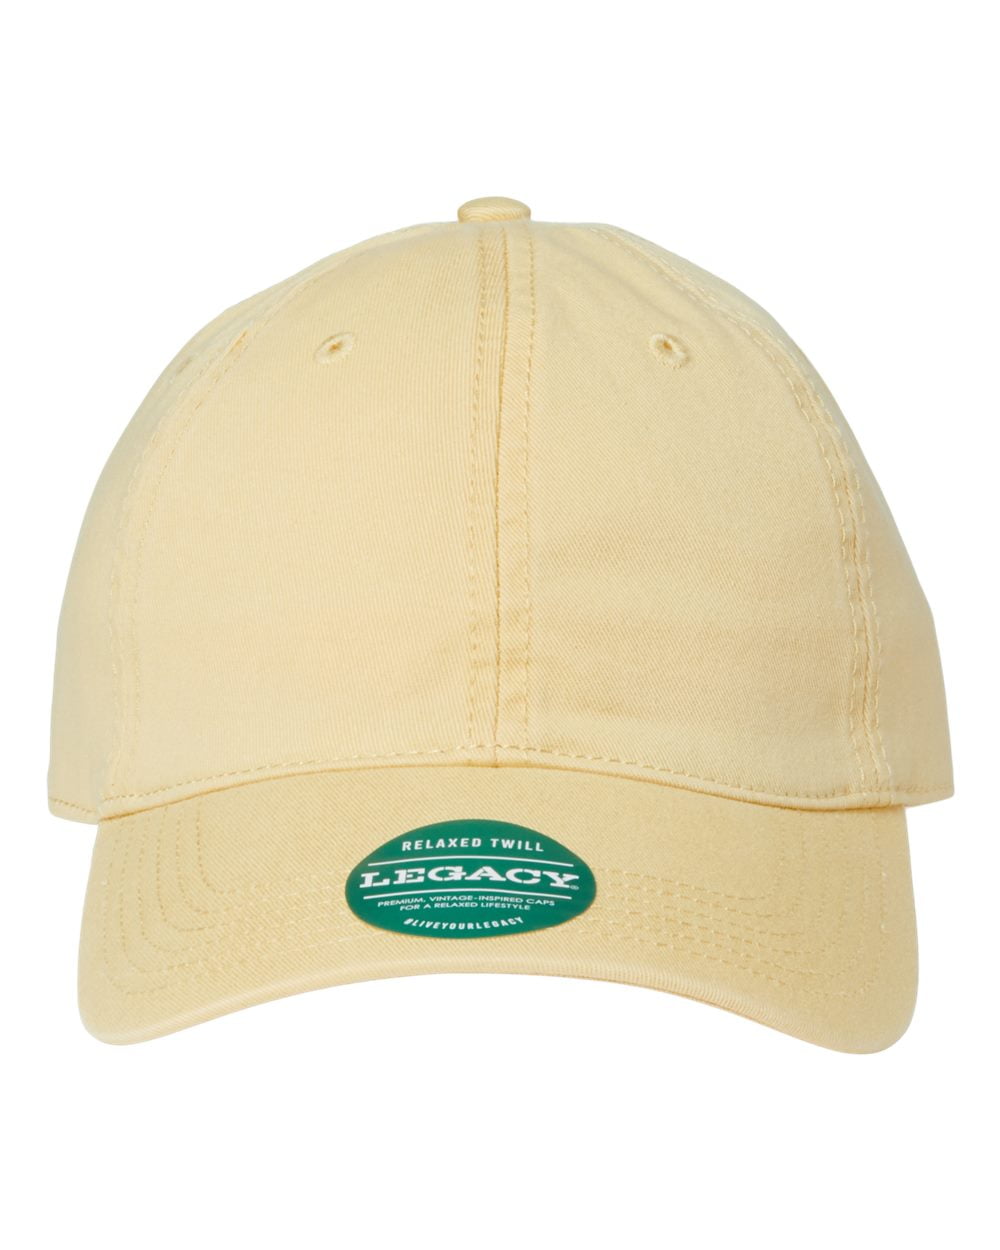 Relaxed LEGACY Hat - - EZA Lemon - Dad Adjustable Twill - Size: